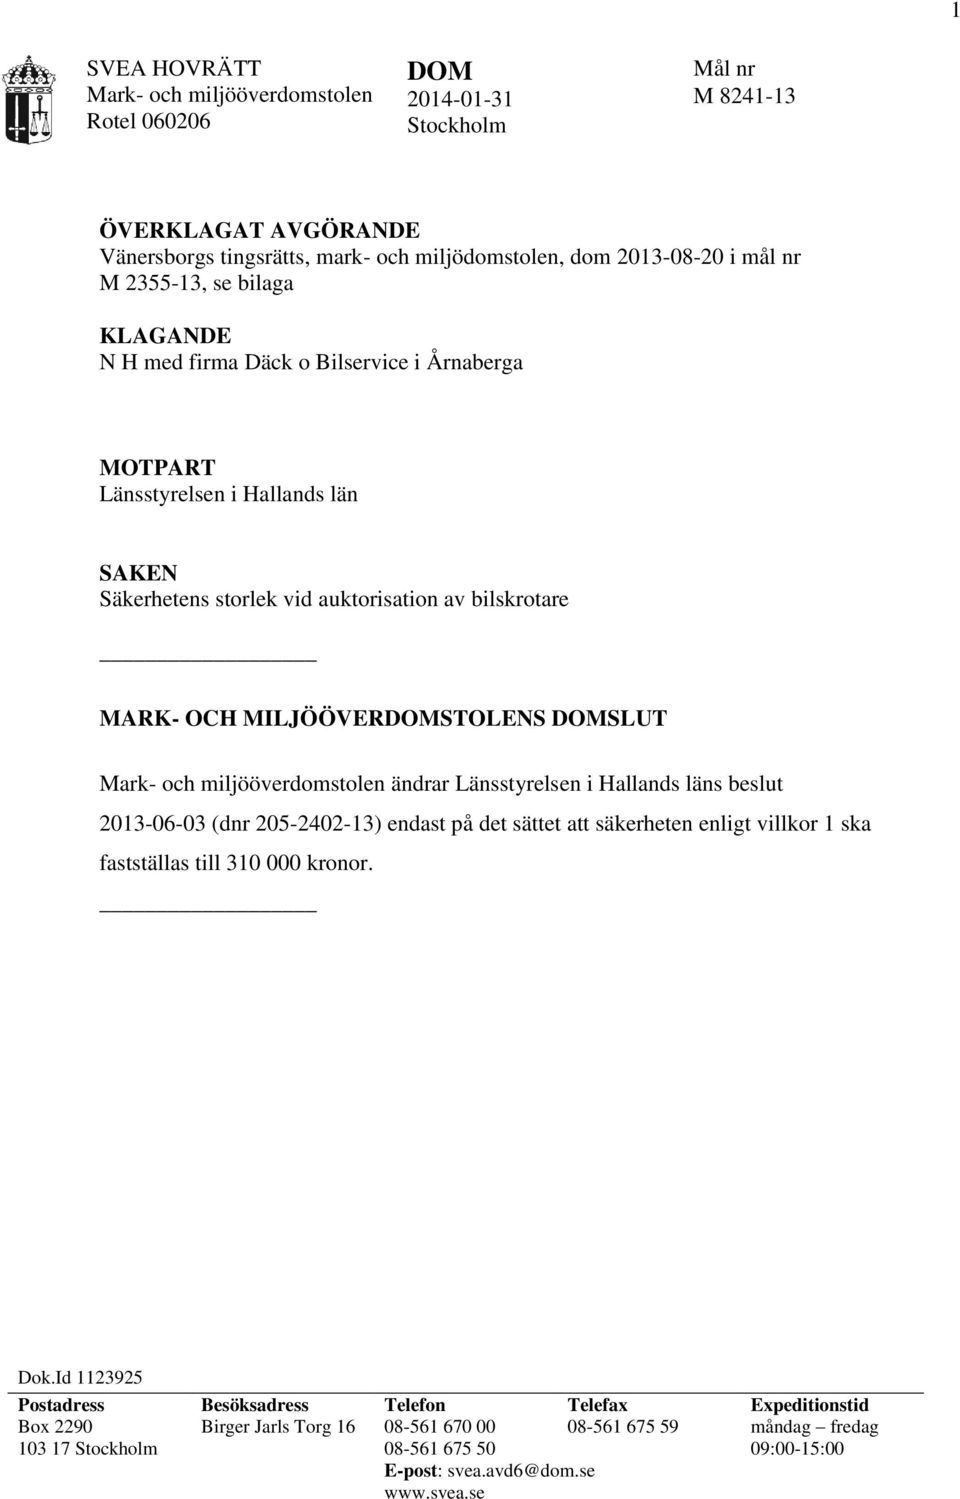 DOMSLUT Mark- och miljööverdomstolen ändrar Länsstyrelsen i Hallands läns beslut 2013-06-03 (dnr 205-2402-13) endast på det sättet att säkerheten enligt villkor 1 ska fastställas till 310 000 kronor.